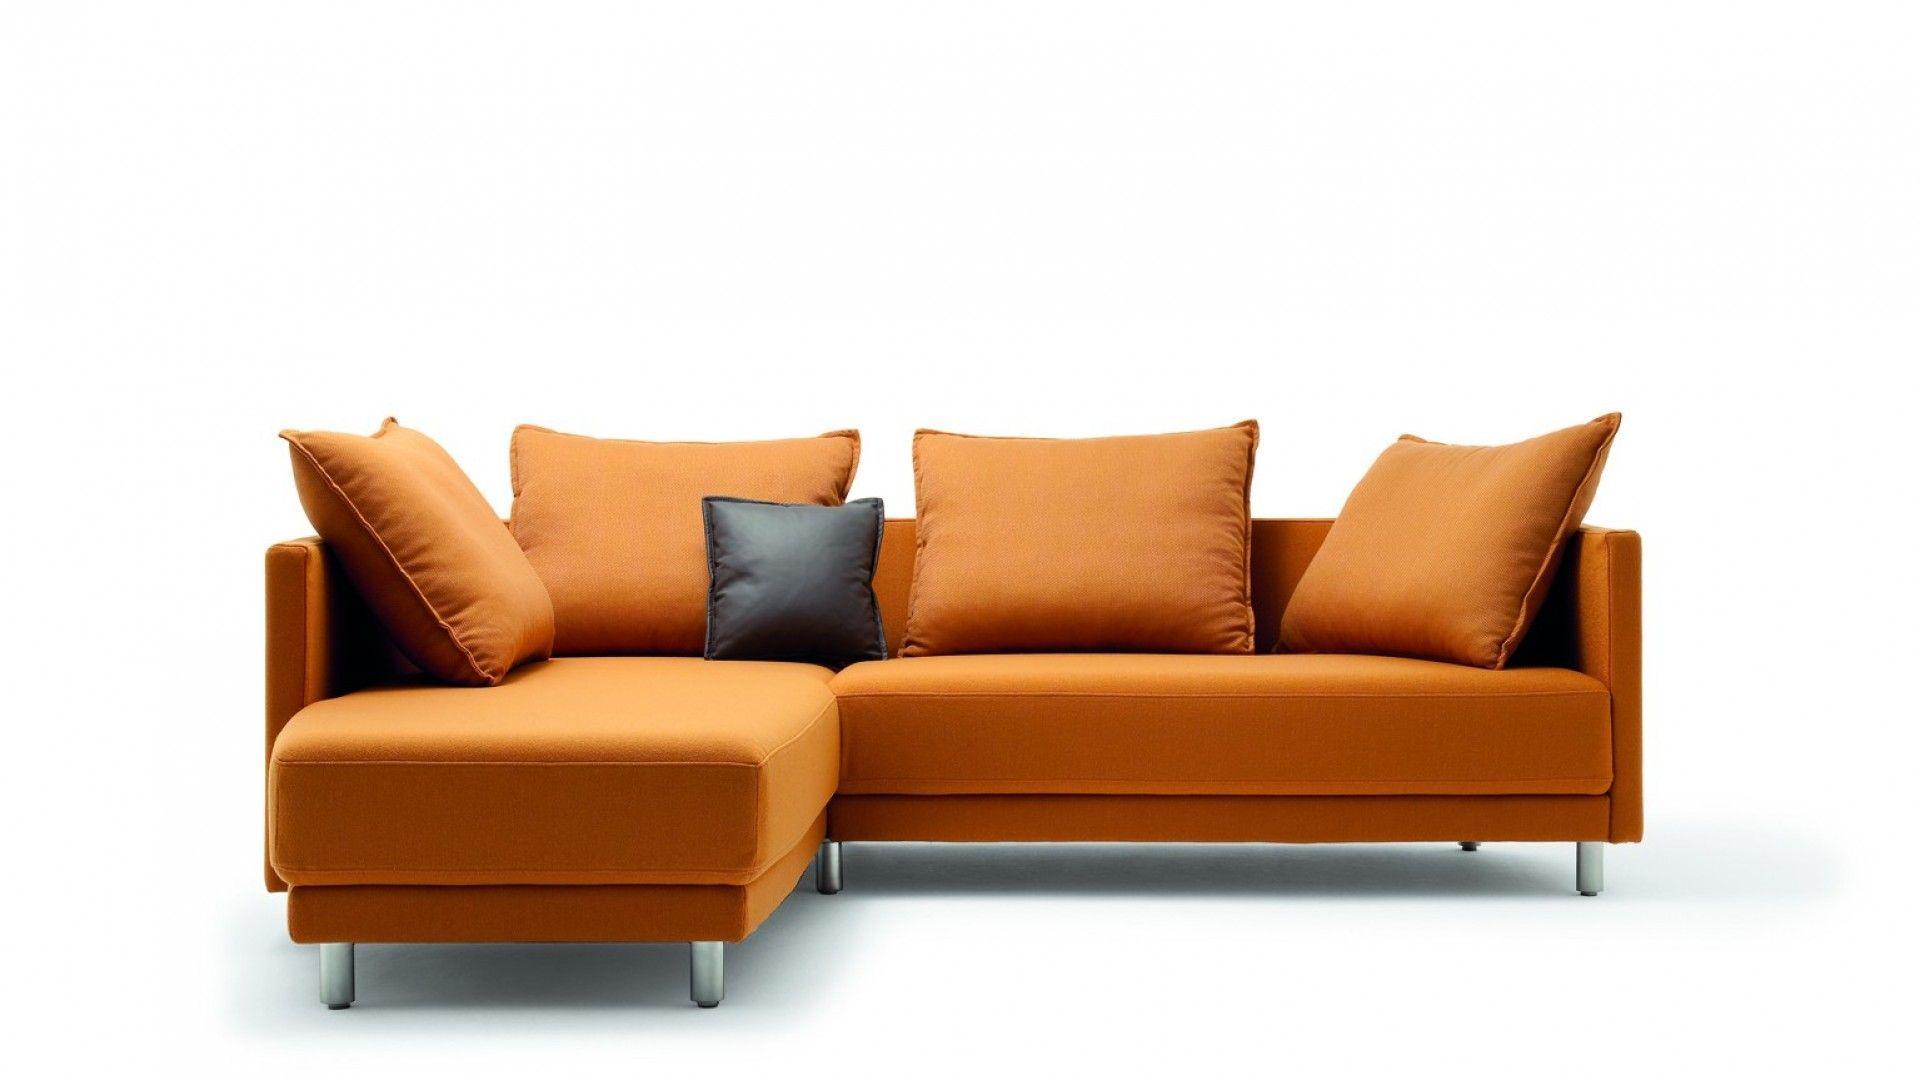 Sofa Wallpaper 8849 1920 x 1080